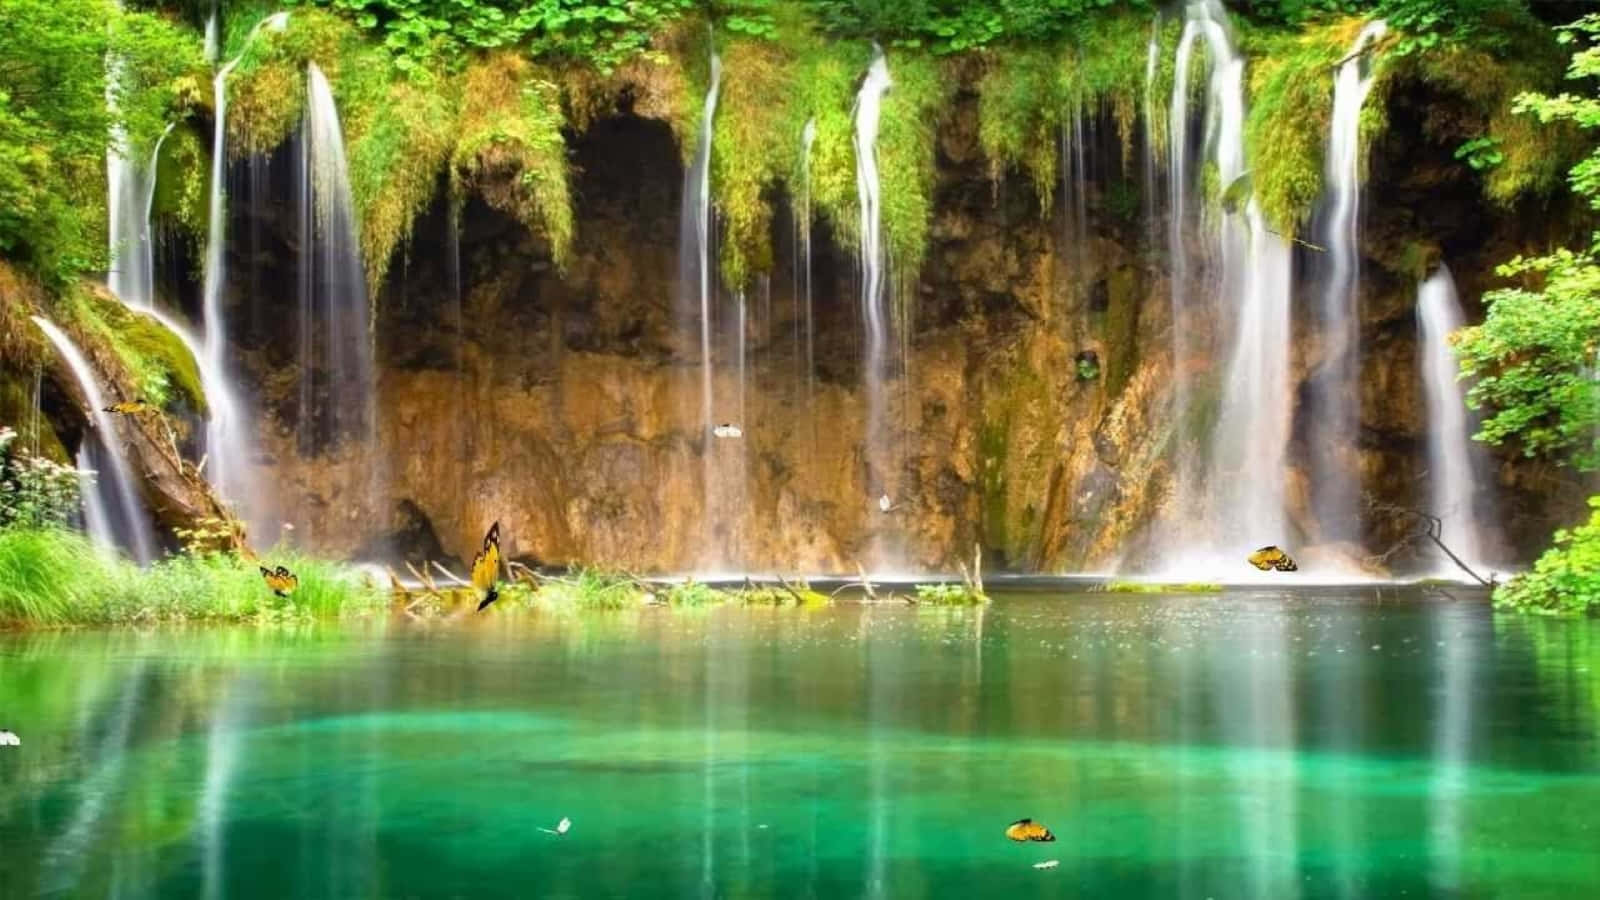 Breathtaking 3D Waterfall in a Lush Green Landscape Wallpaper